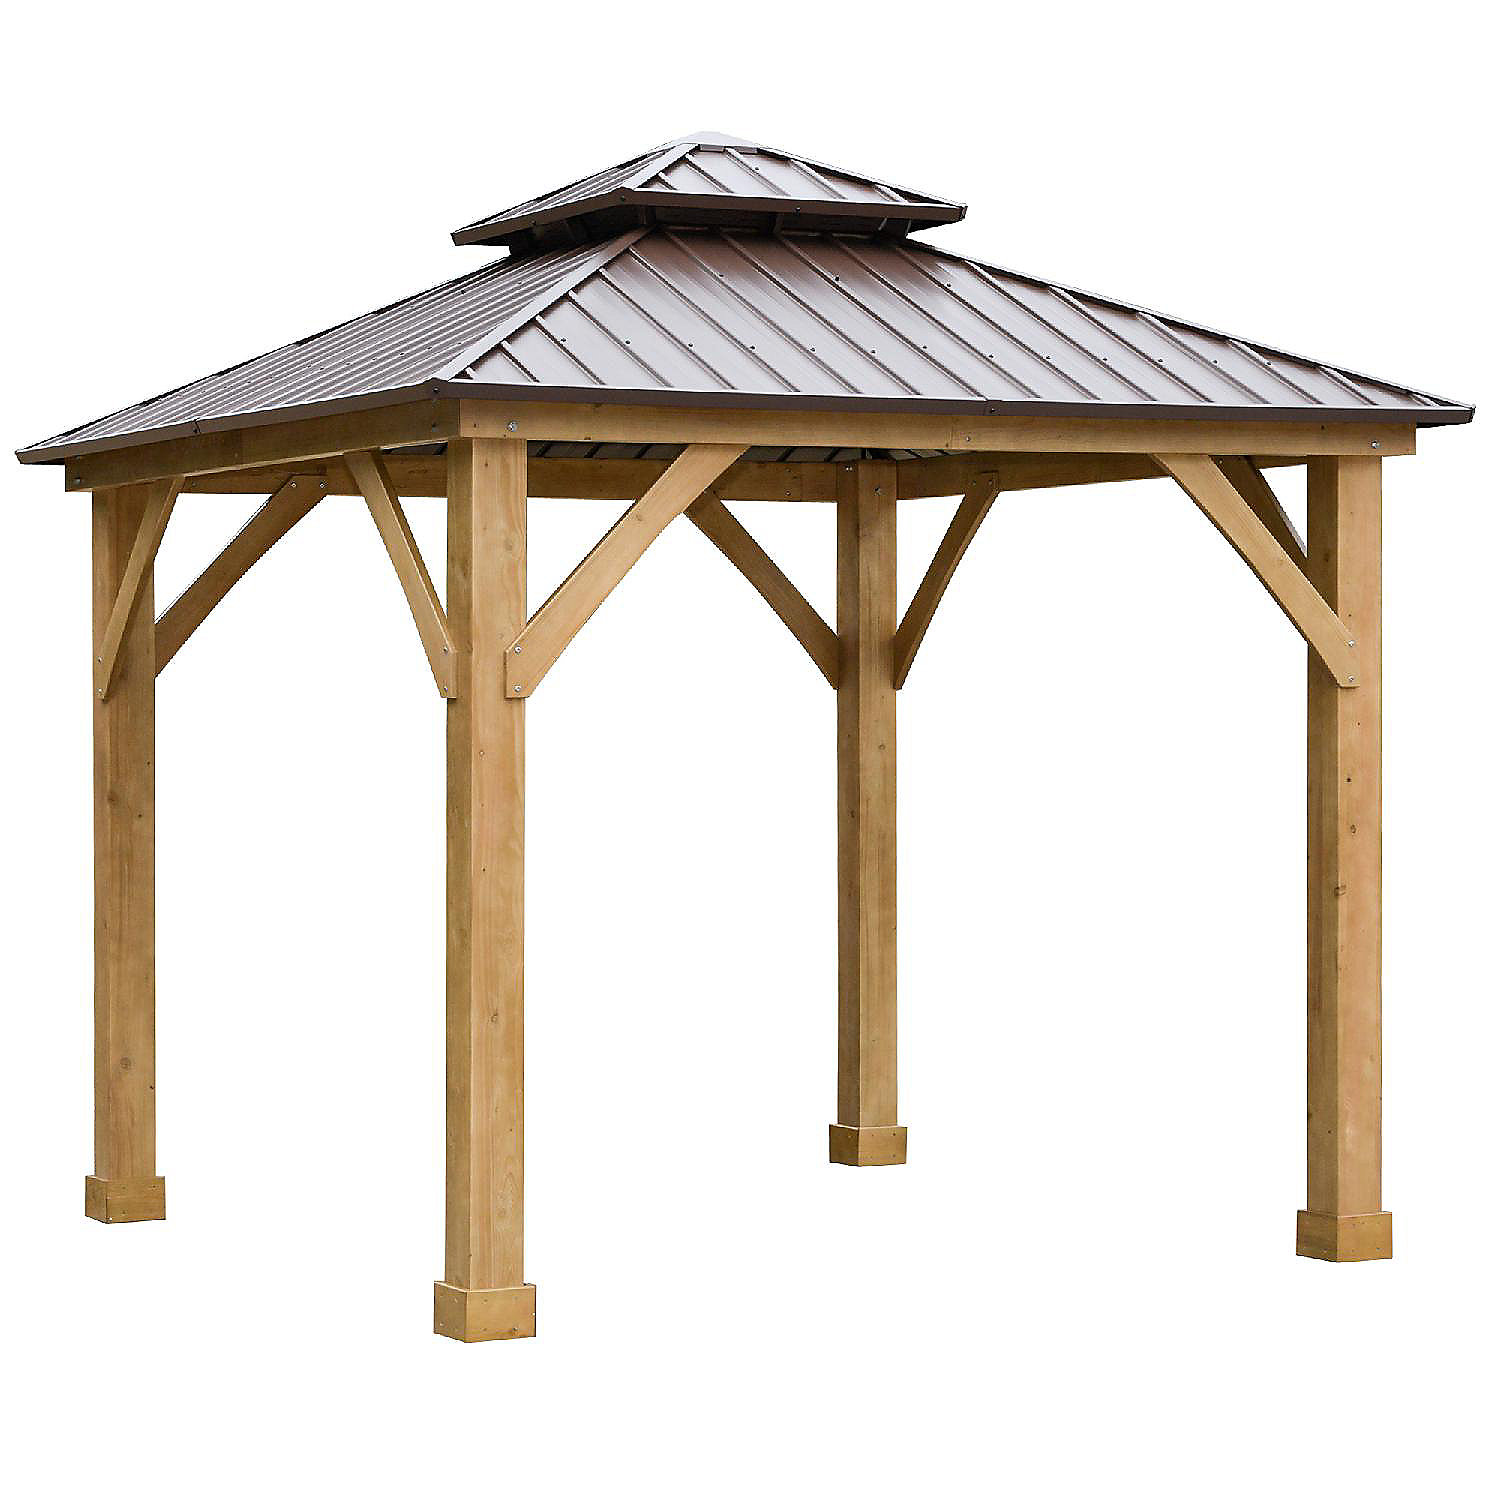 kiem fluit Waakzaamheid Outsunny 10' x 10' Hardtop Gazebo Canopy Outdoor Patio Shelter with Solid  Wood Frame Steel Double Tier Roof Brown | Oriental Trading